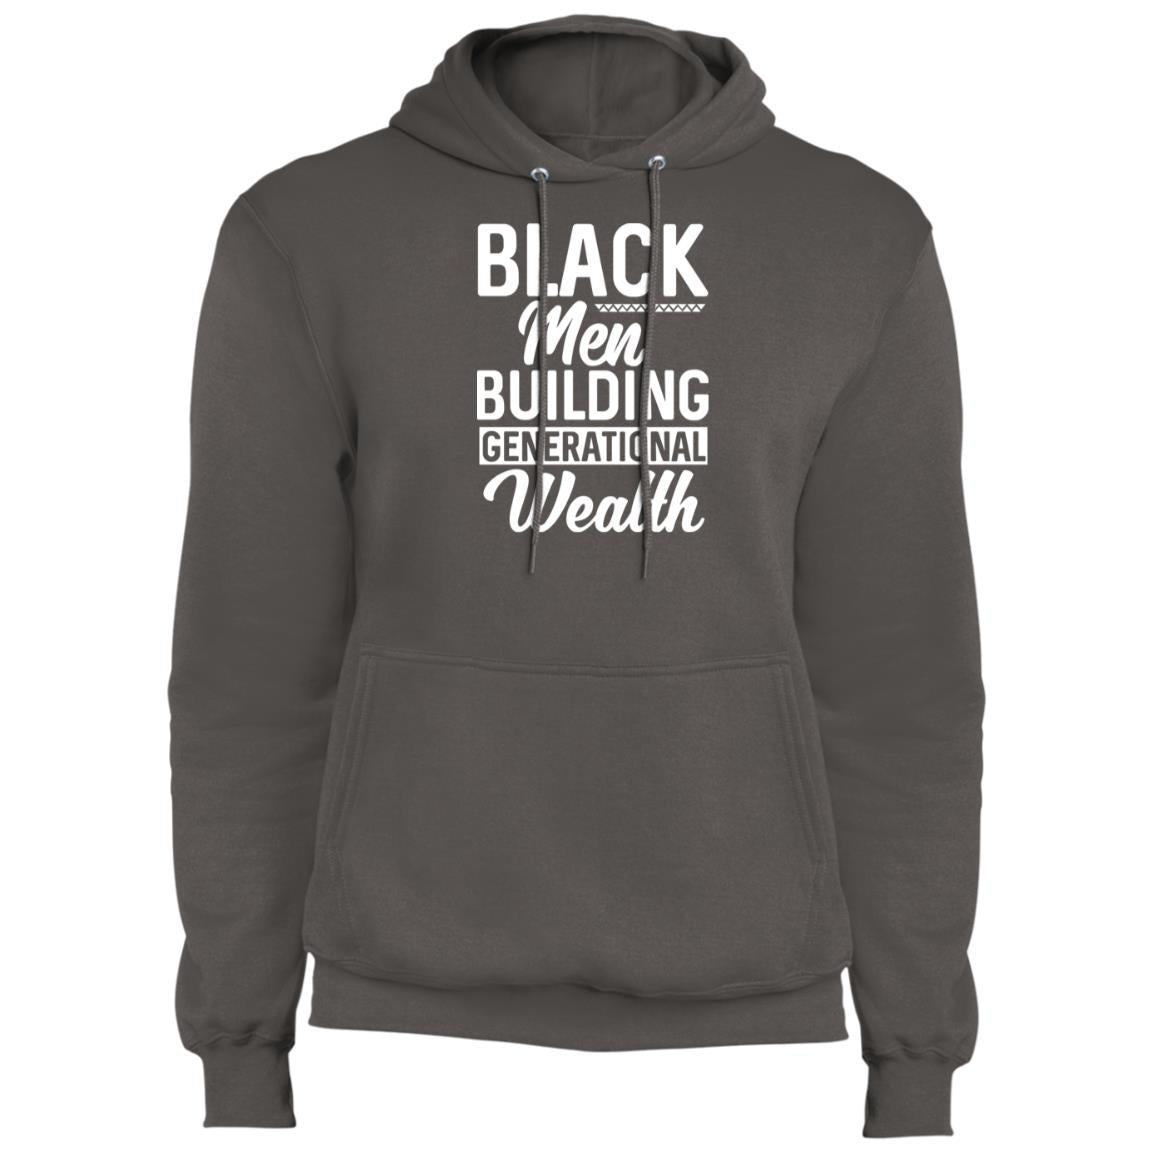 Black Men Building Generational Wealth - Fleece Pullover Hoodie